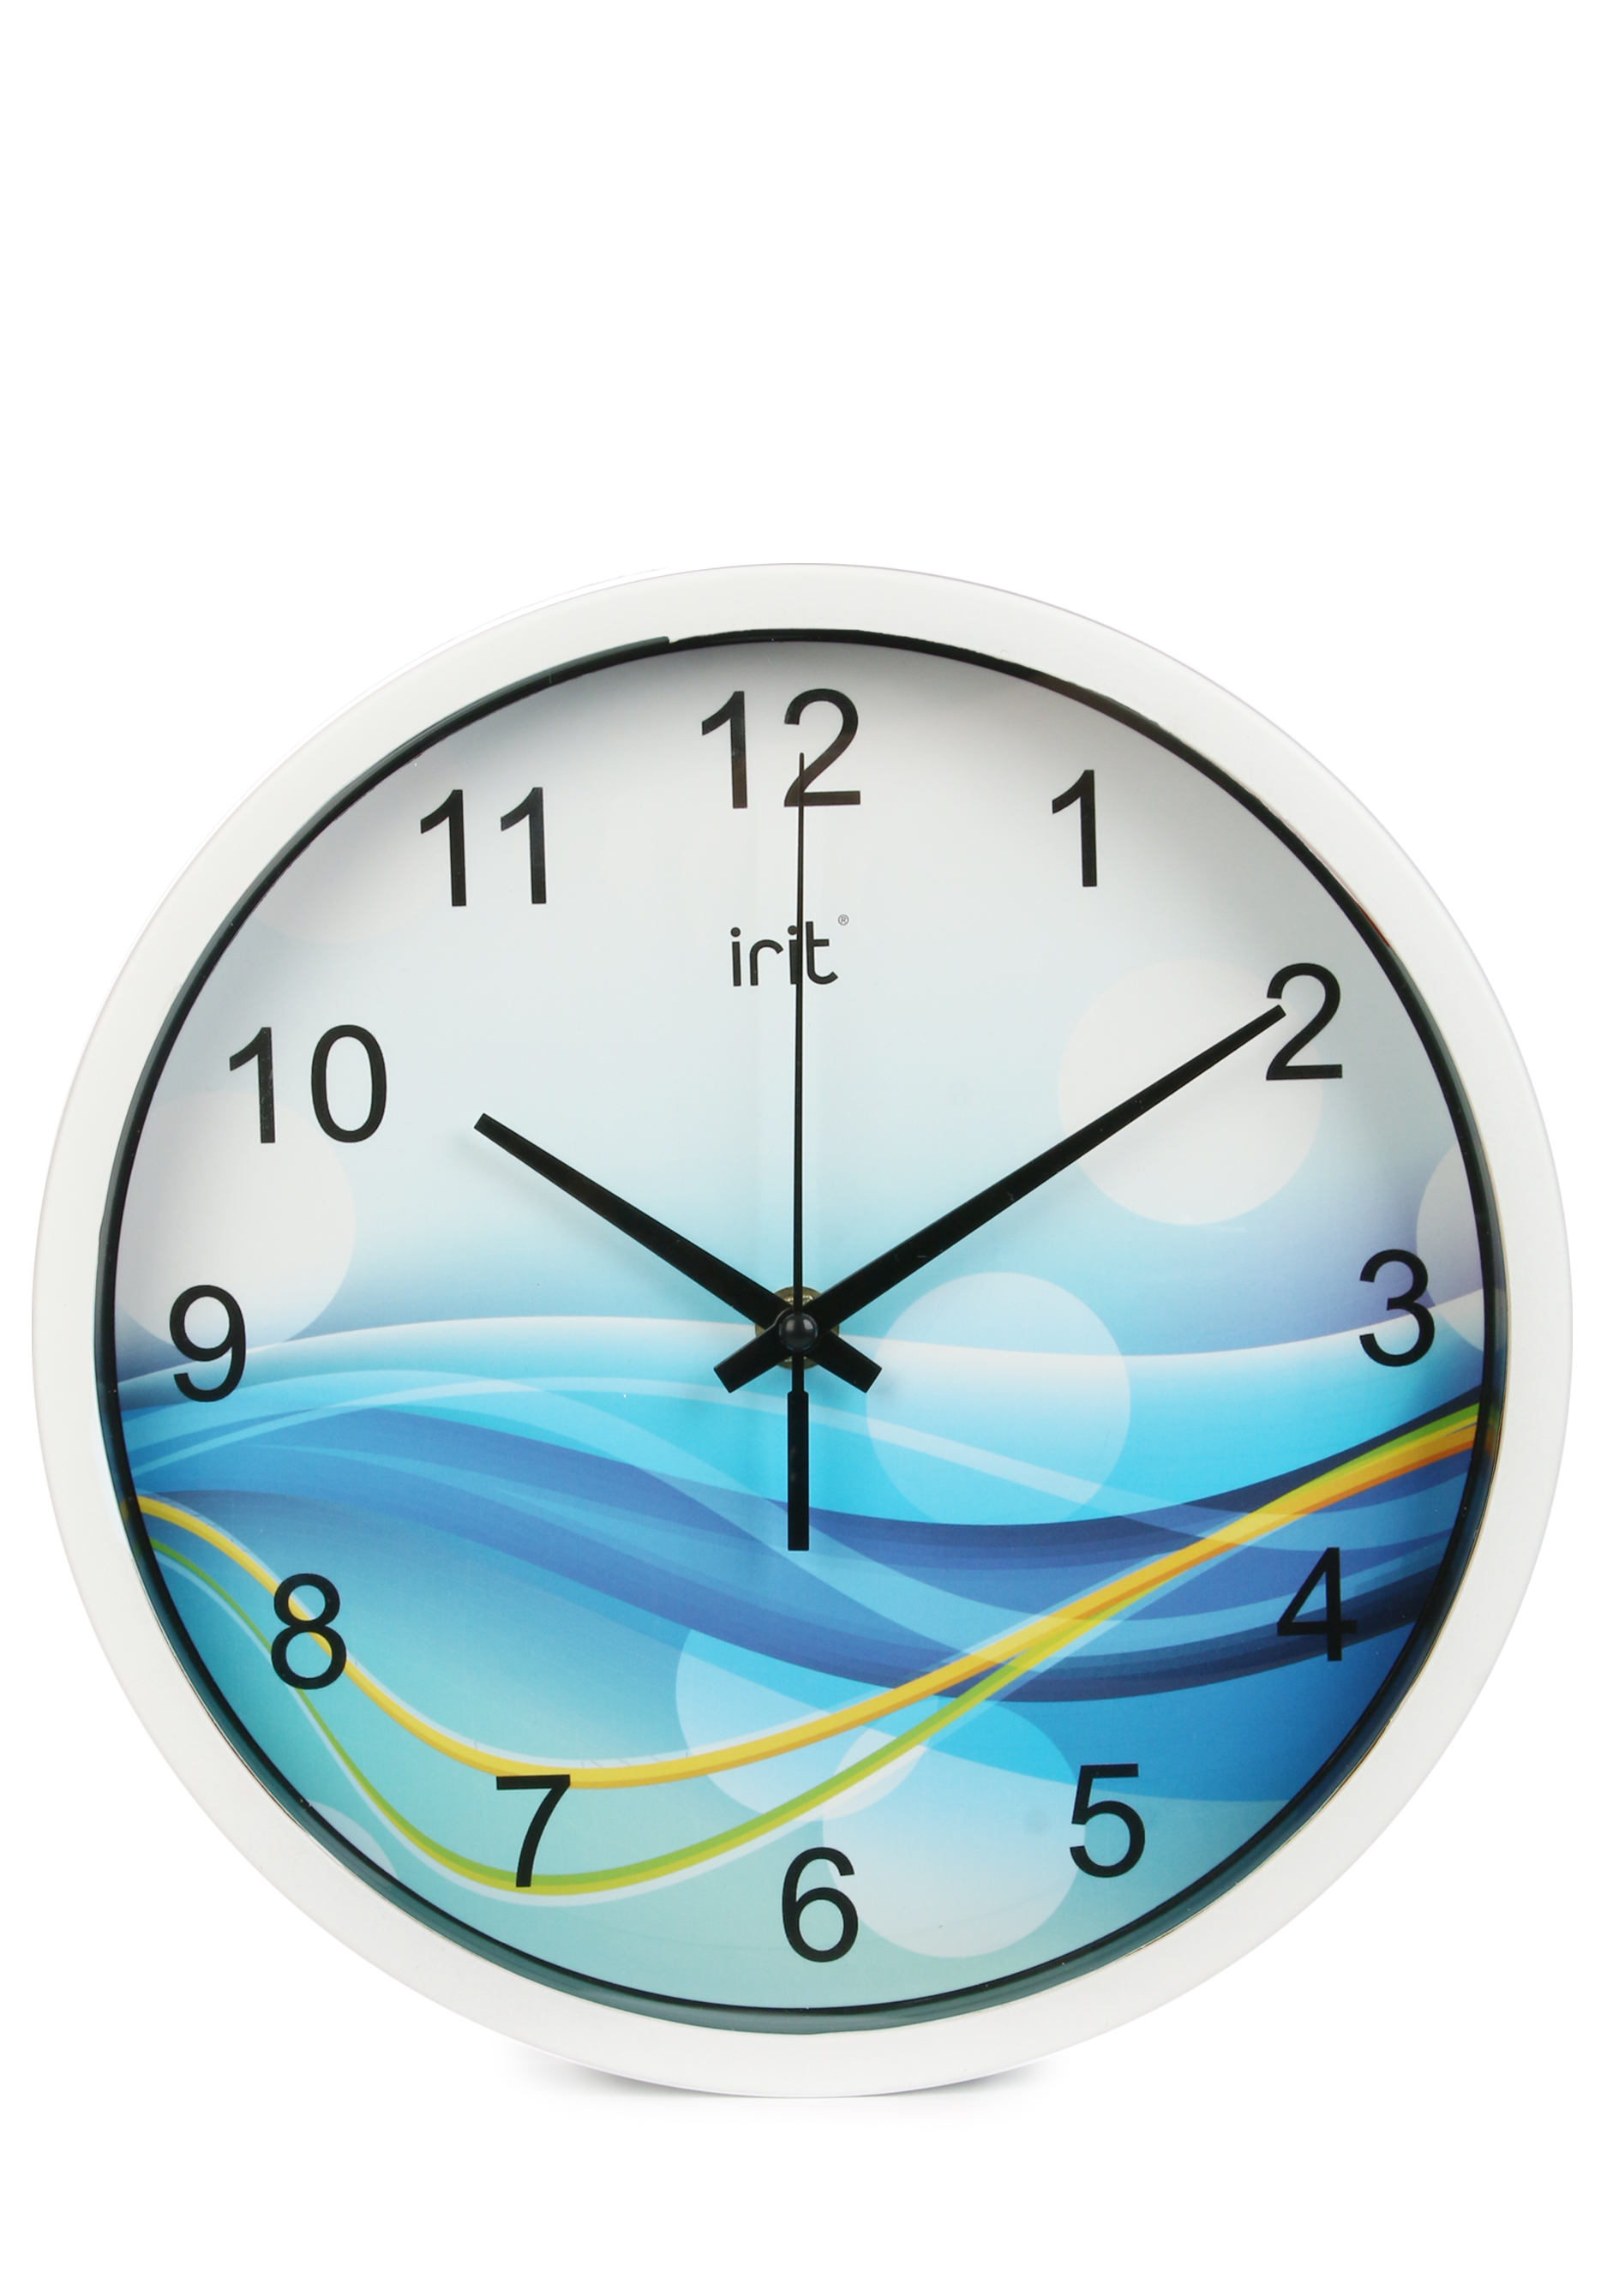 Круглые настенные часы IRIT, цвет голубой, размер 25 см - фото 9